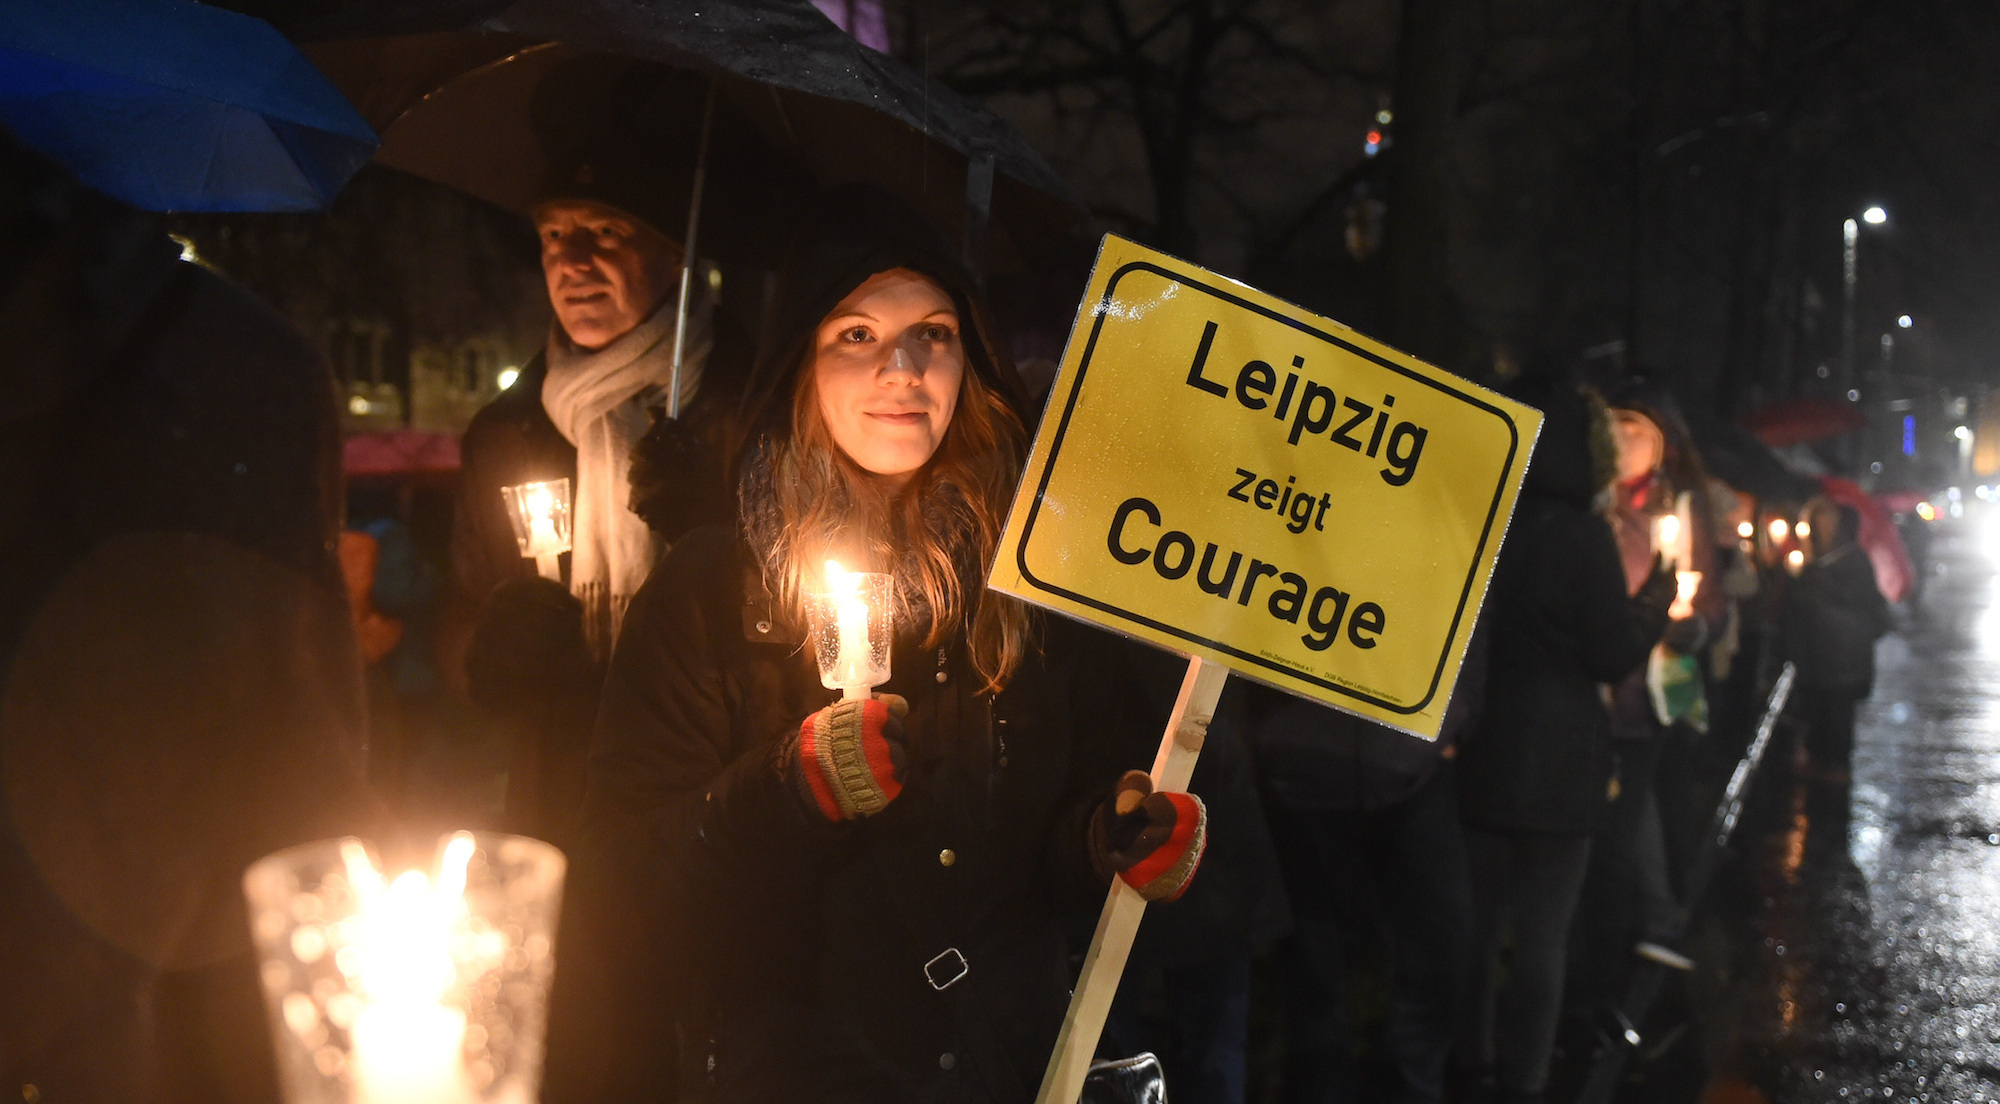 Foto: Eine Frau hält am 11.01.2016 in Leipzig ein Schild mit der Aufschrift "Leipzig zeigt Courage" in der Hand und demonstriert damit gegen das islamkritische Legida-Bündnis.